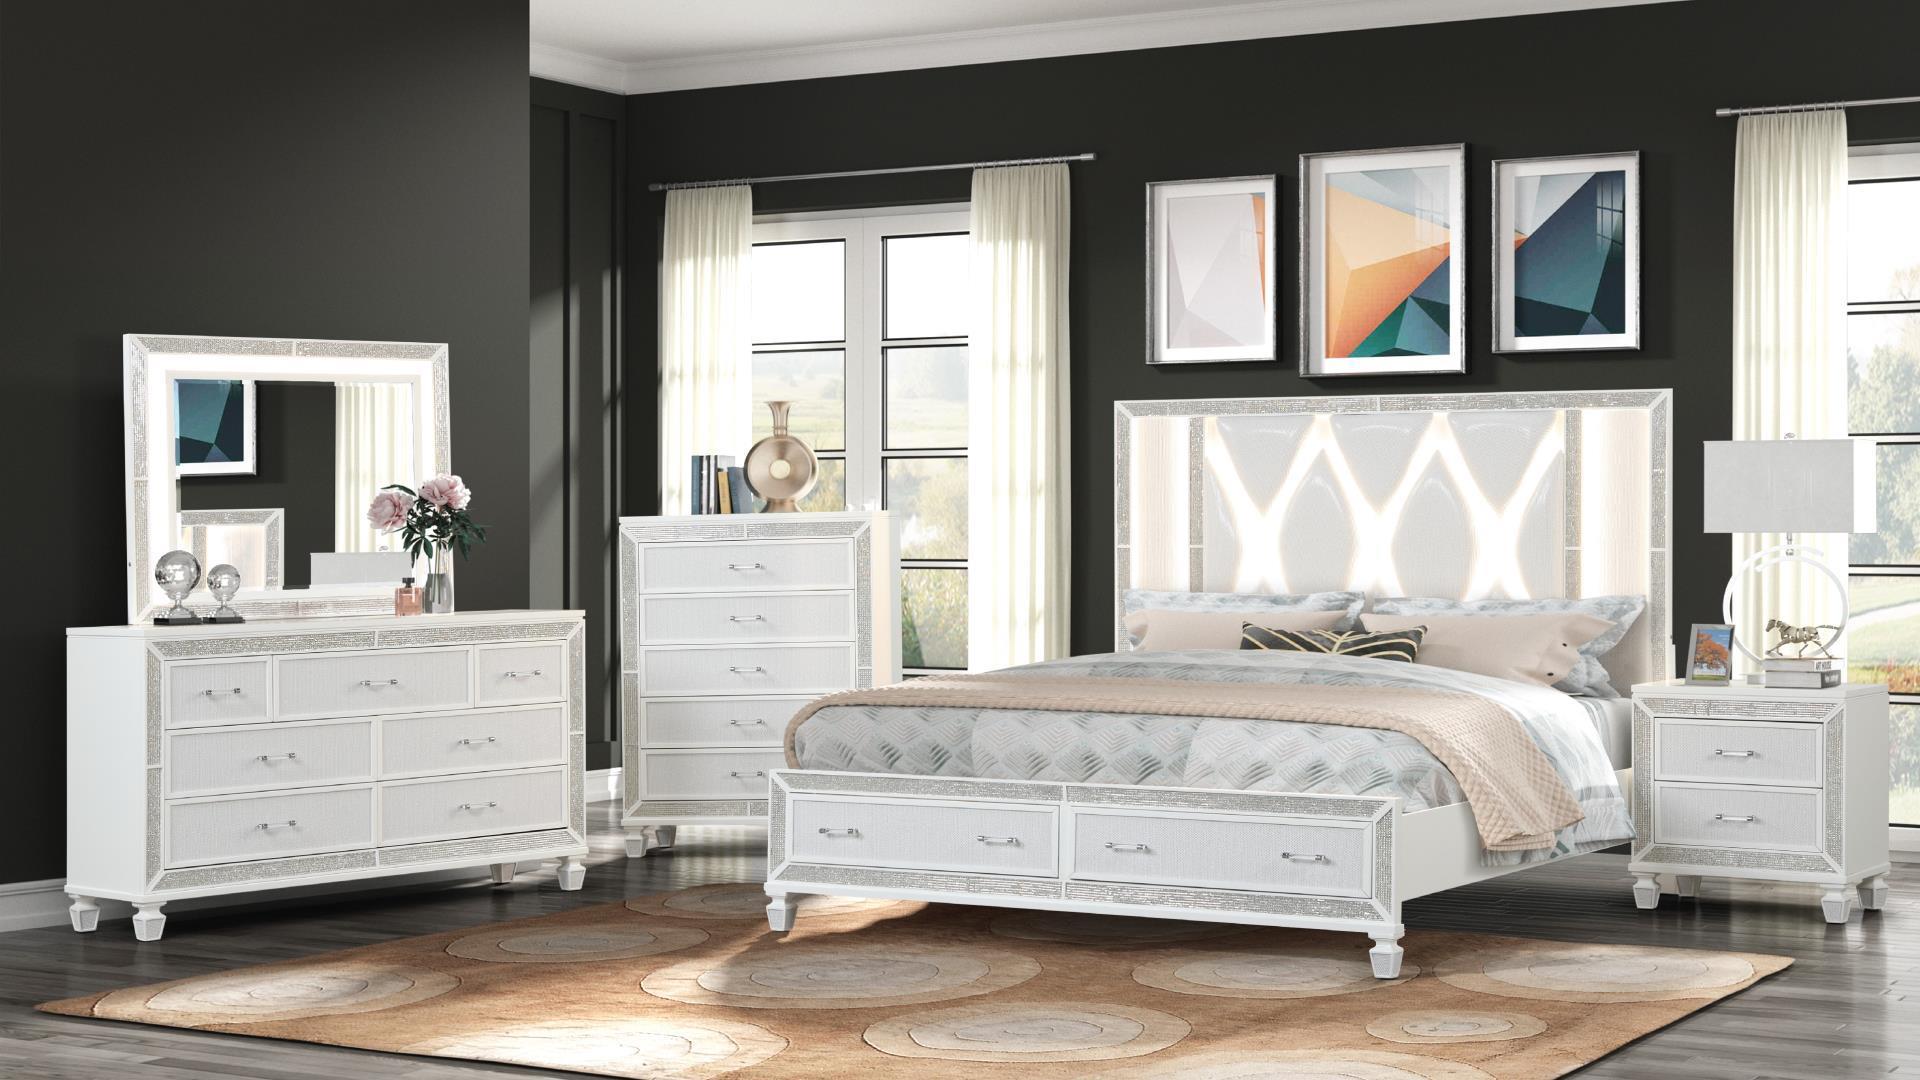 

    
CRYSTAL-EK-BED Galaxy Home Furniture Storage Bed
